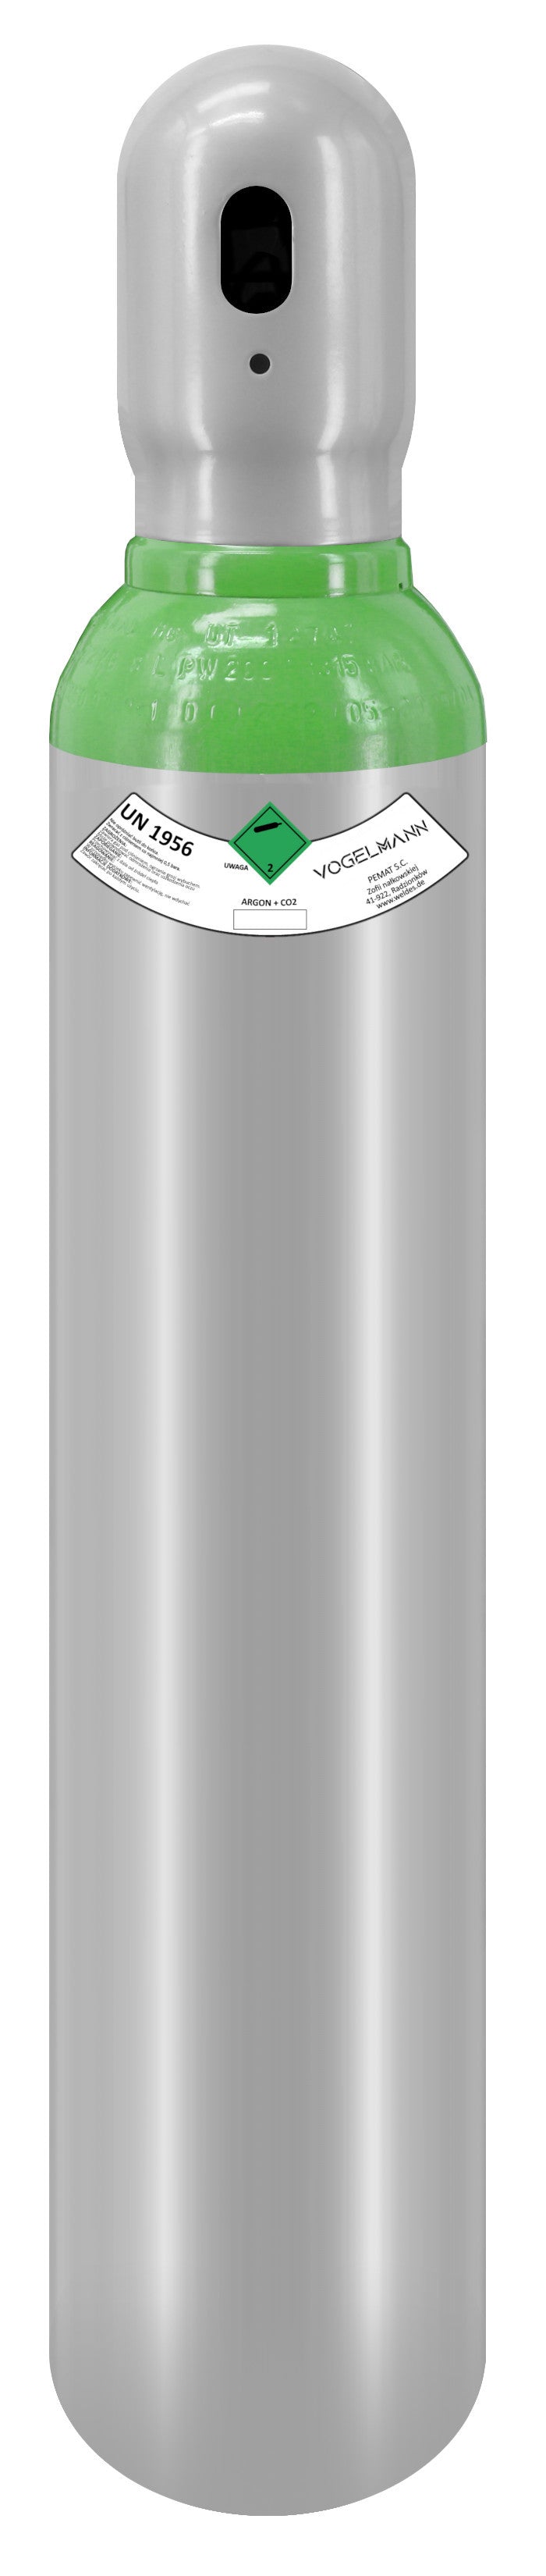 Argon/CO2 full gas cylinder 8L 1,5m3 with Regulator Exakt Vogelmann